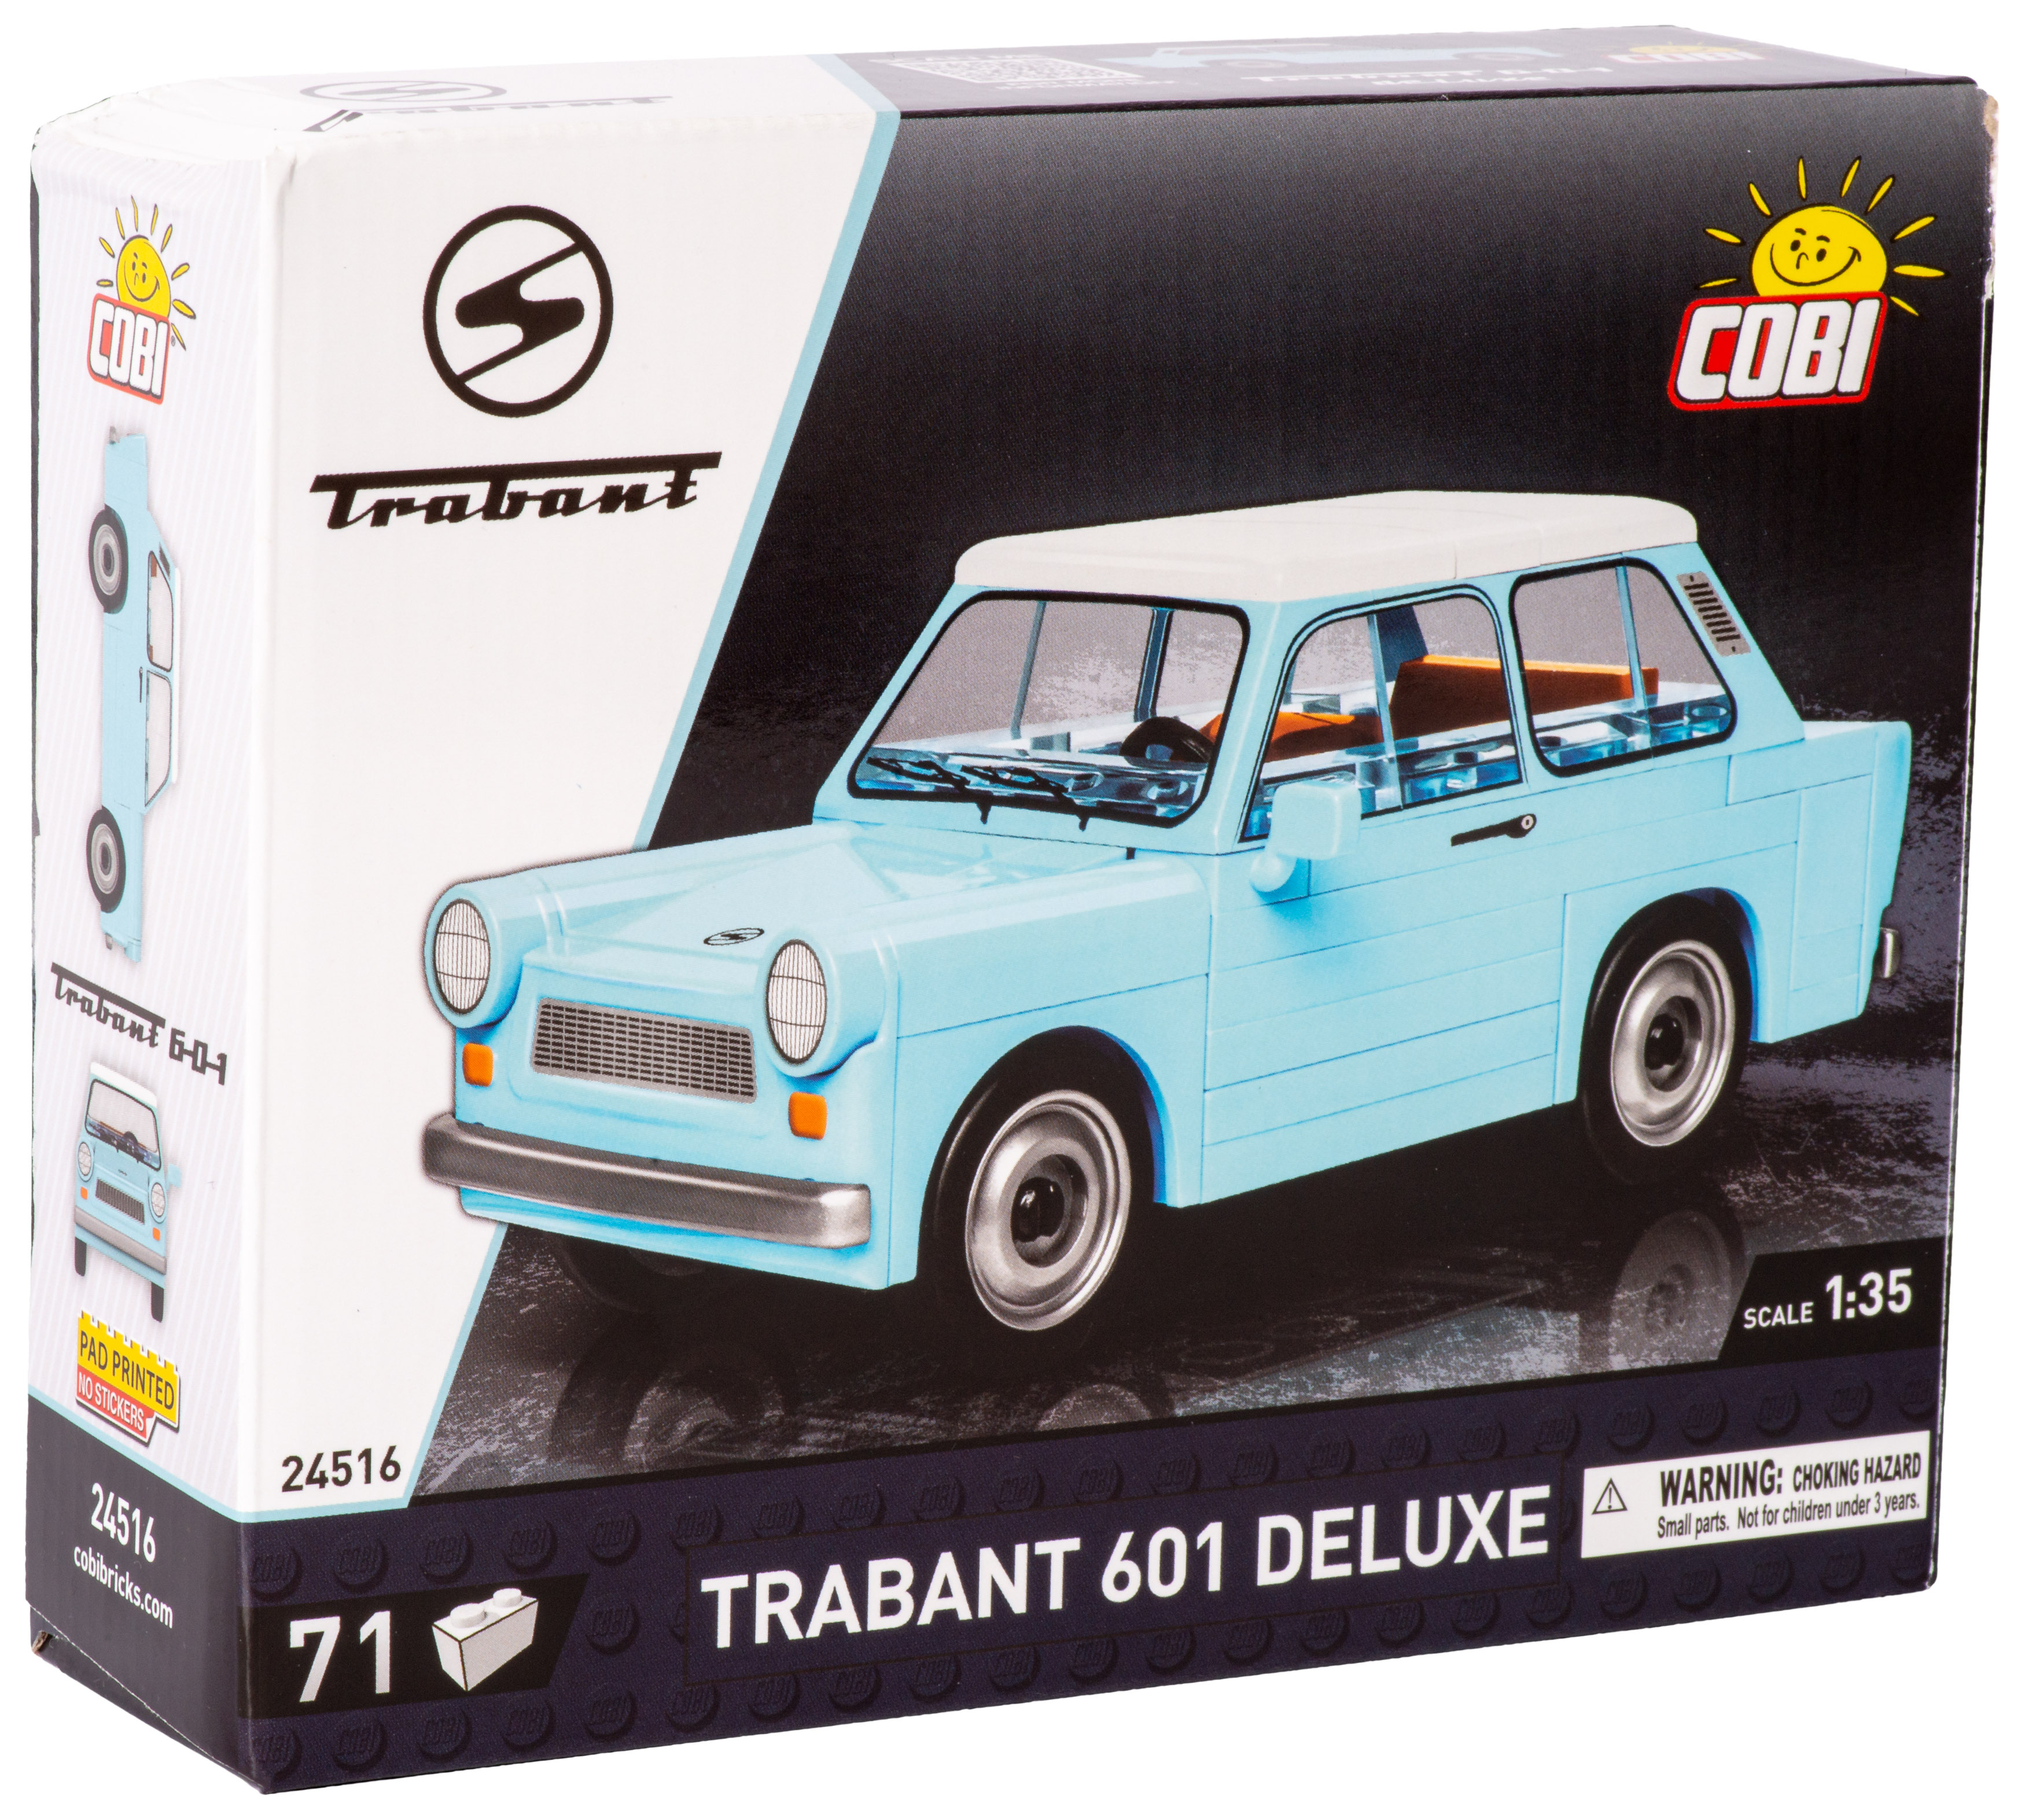 Cobi - Trabant 601 Deluxe